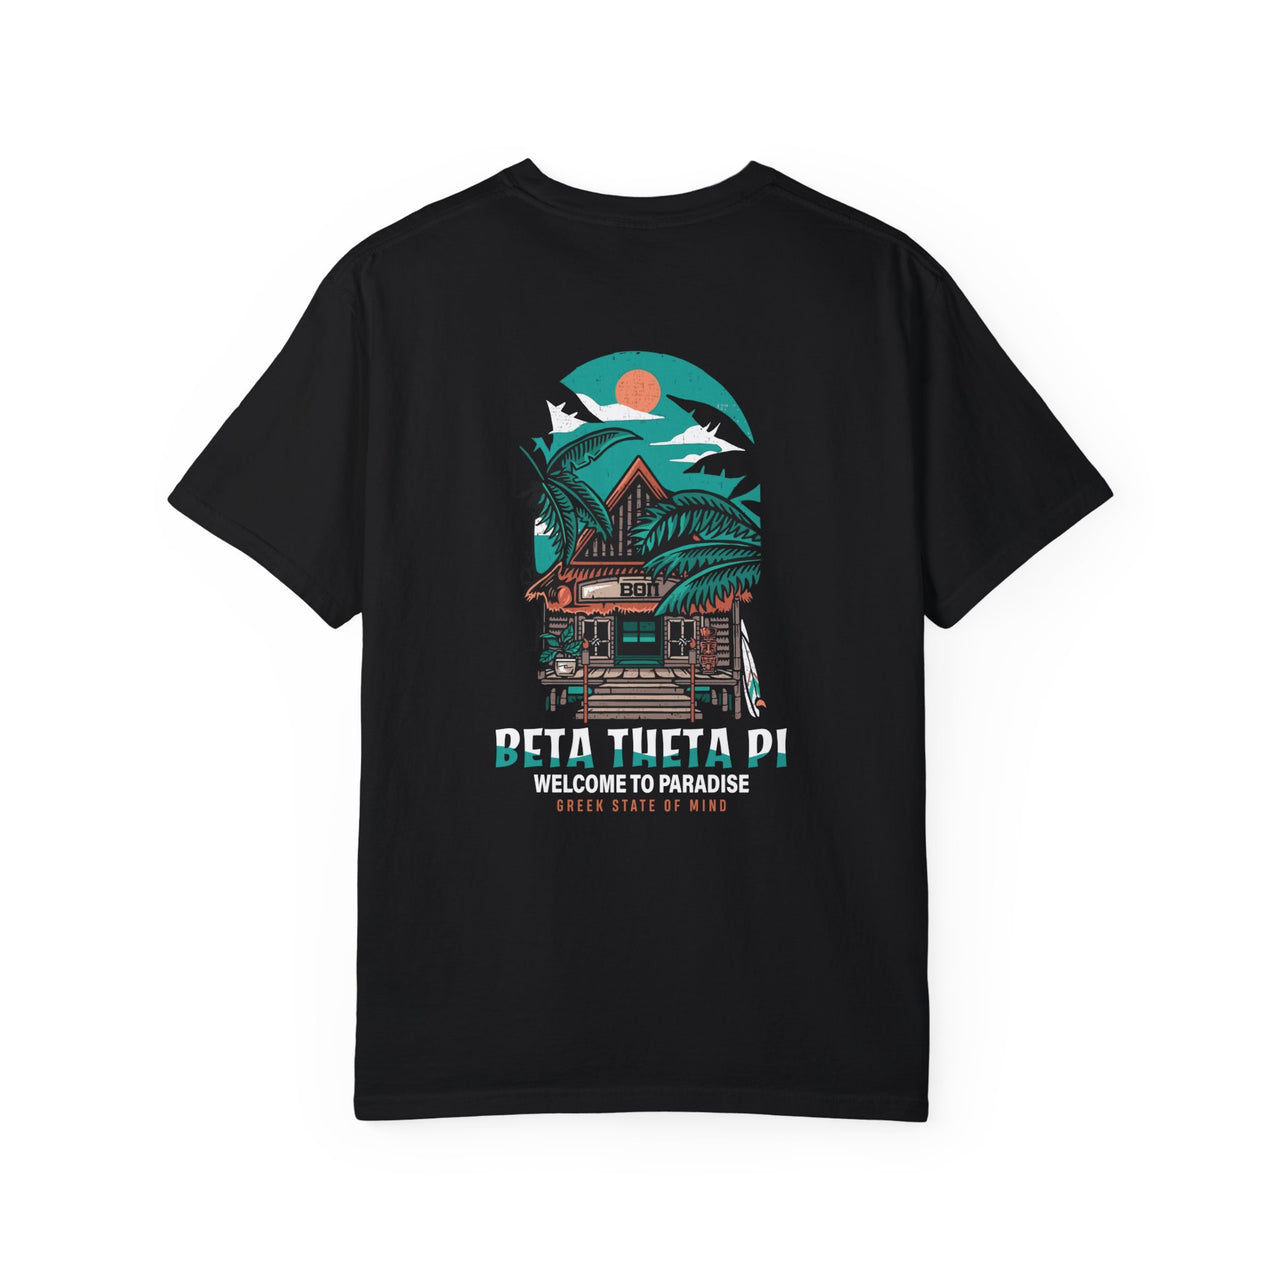 Beta Theta Pi Graphic T-Shirt | Welcome to Paradise